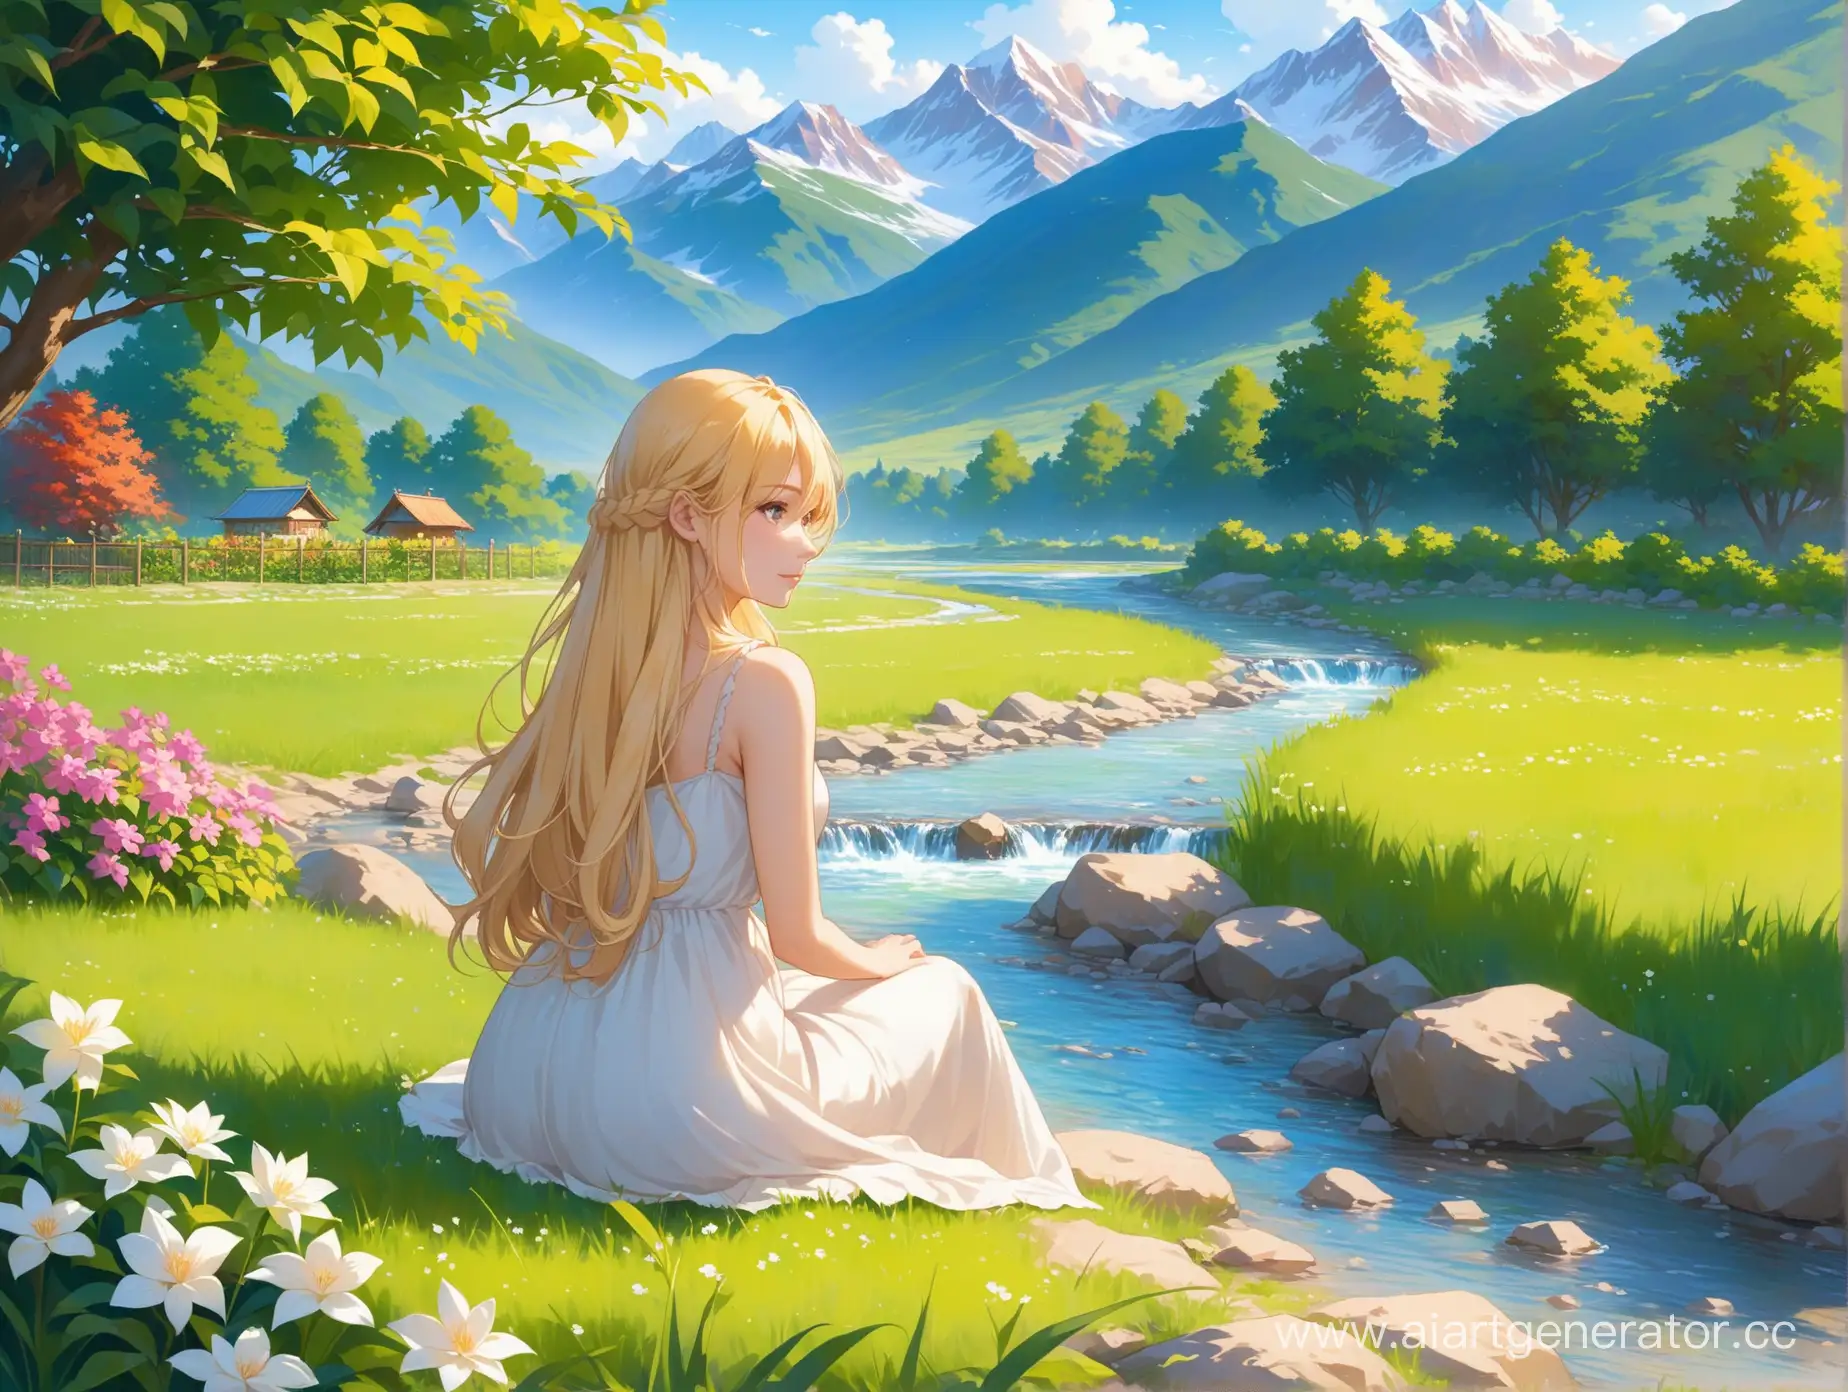 далекие горы, сад у подножия, красивая женщина с длинной русой косой сидит у ручья